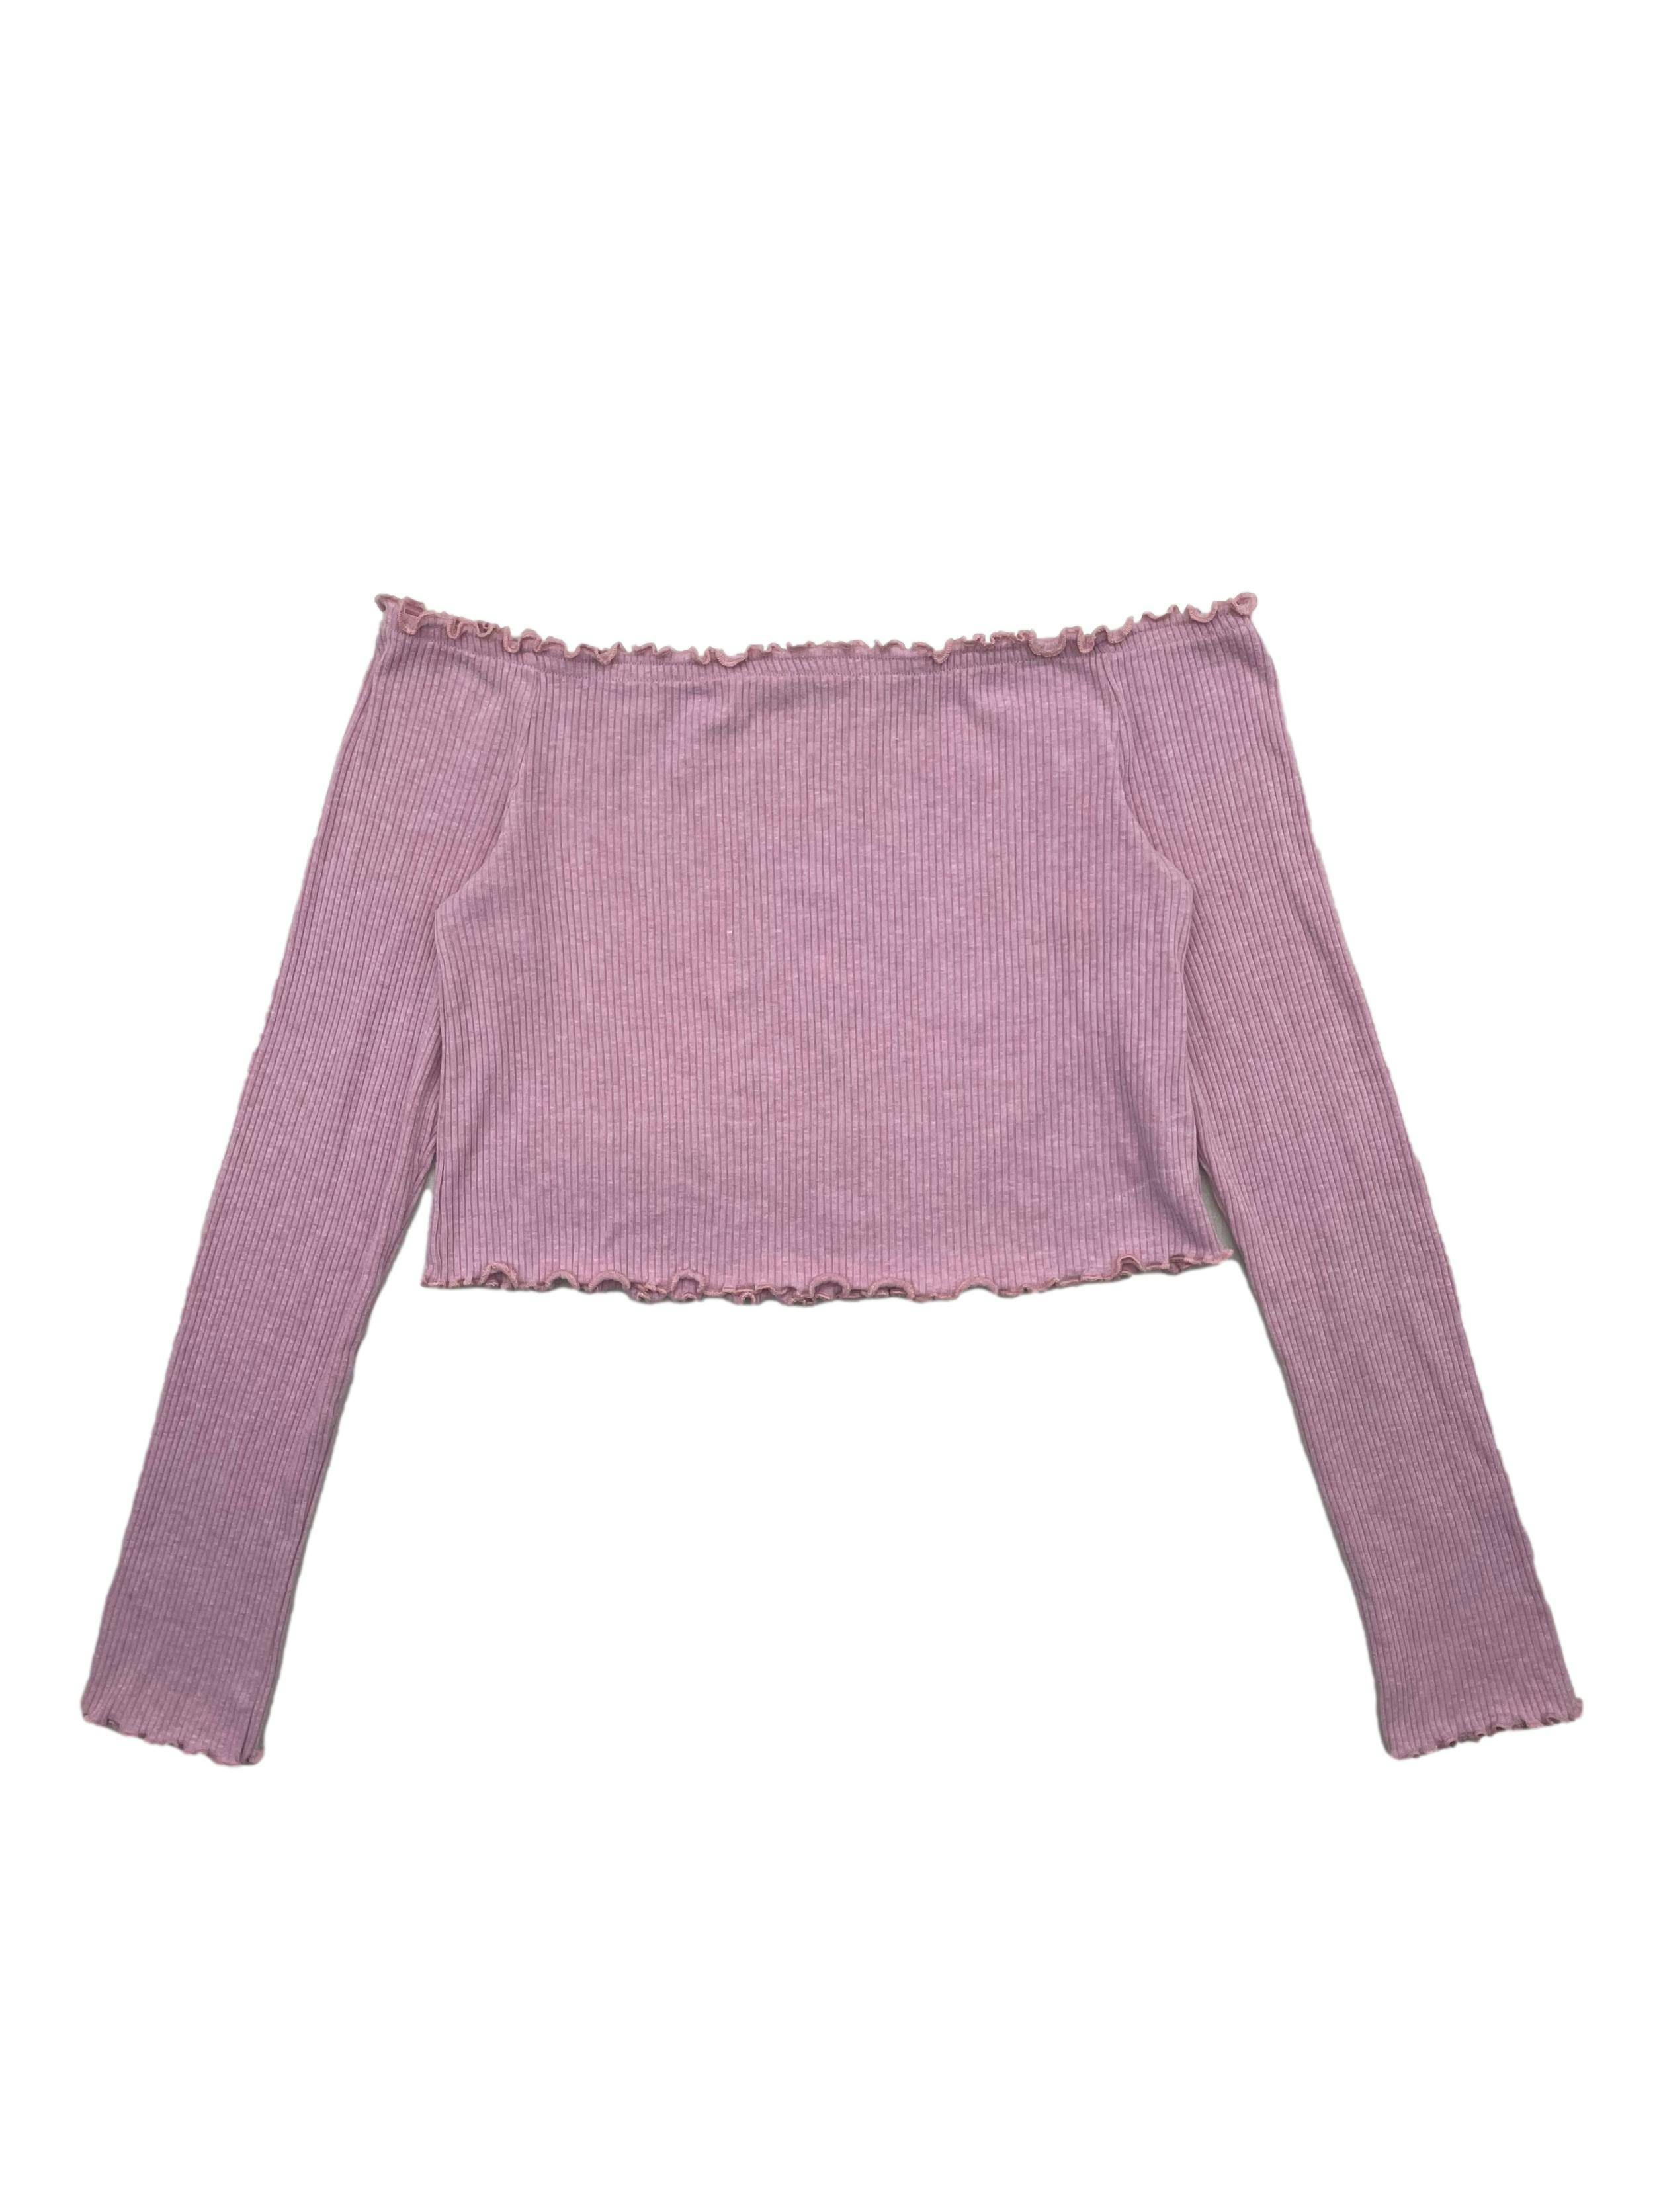 Polo off shoulder H&M rosado de tela acanalada con antideslizante en escote y acabados de lechuga. Busto 72cm sin estirar, Largo 32cm.